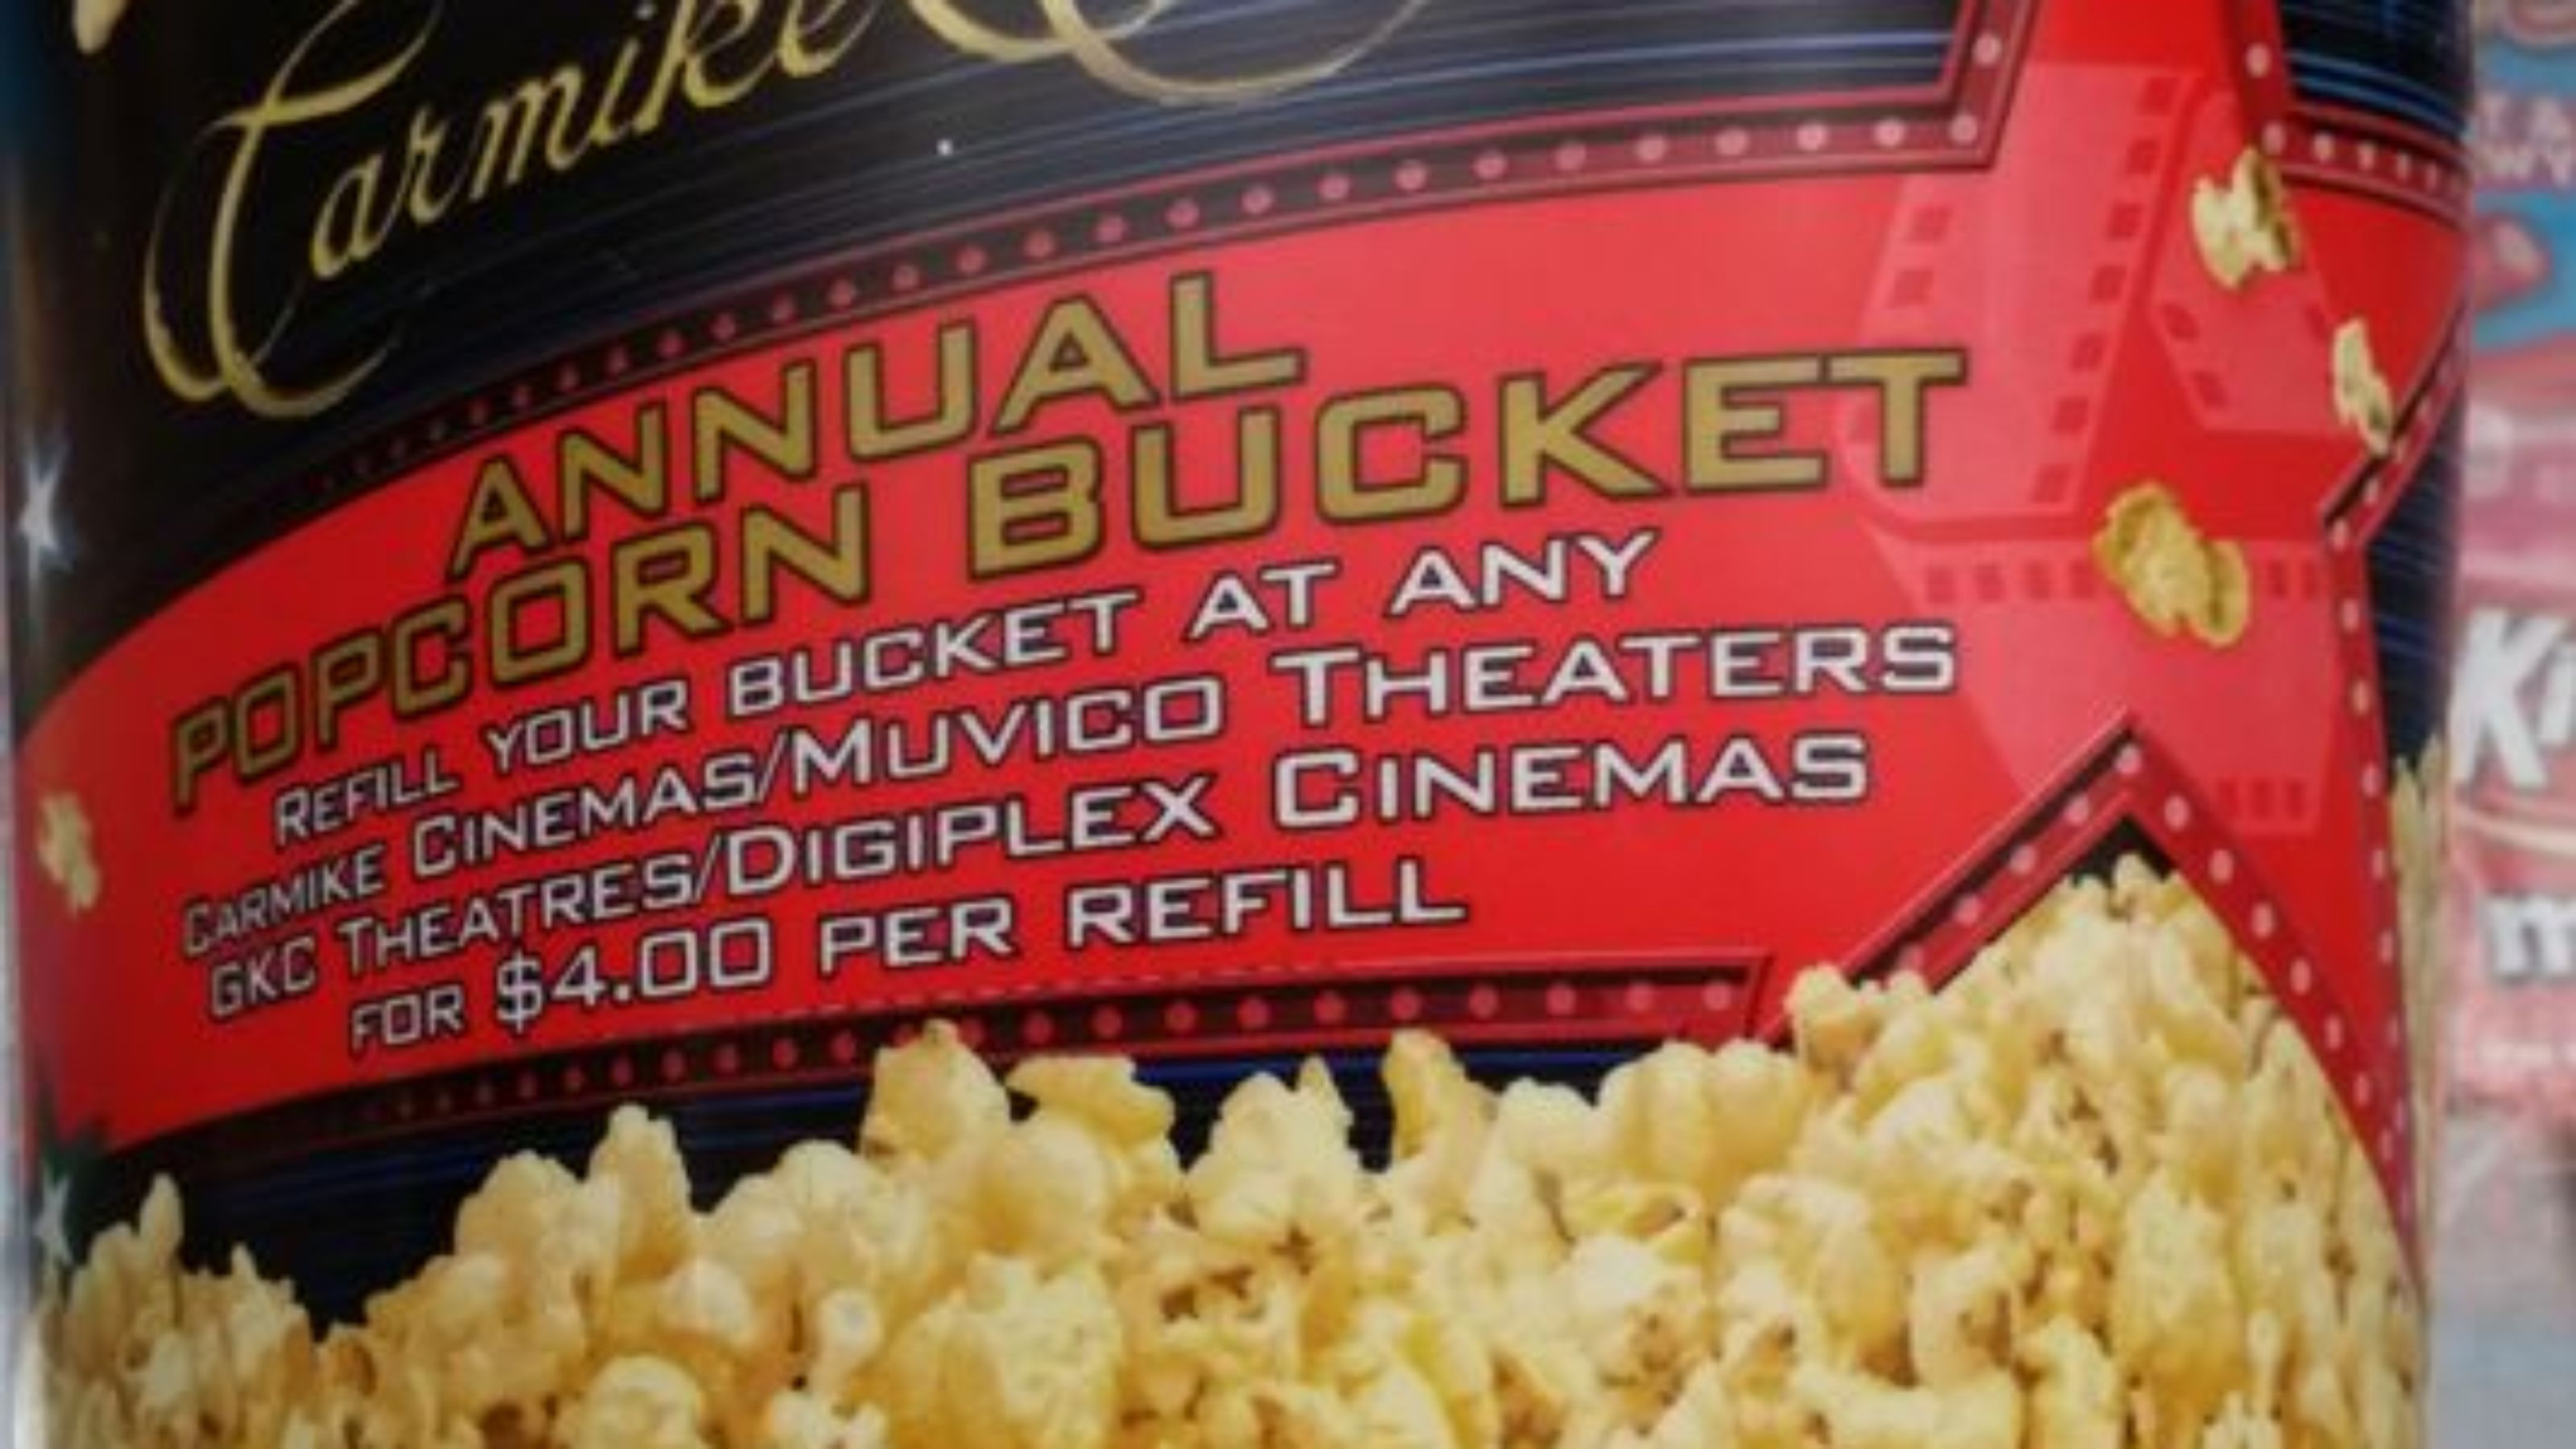 Popcorn Bucket: Regal Cinemas Popcorn Bucket - Regal Cinema Free Popcorn Printable Coupons